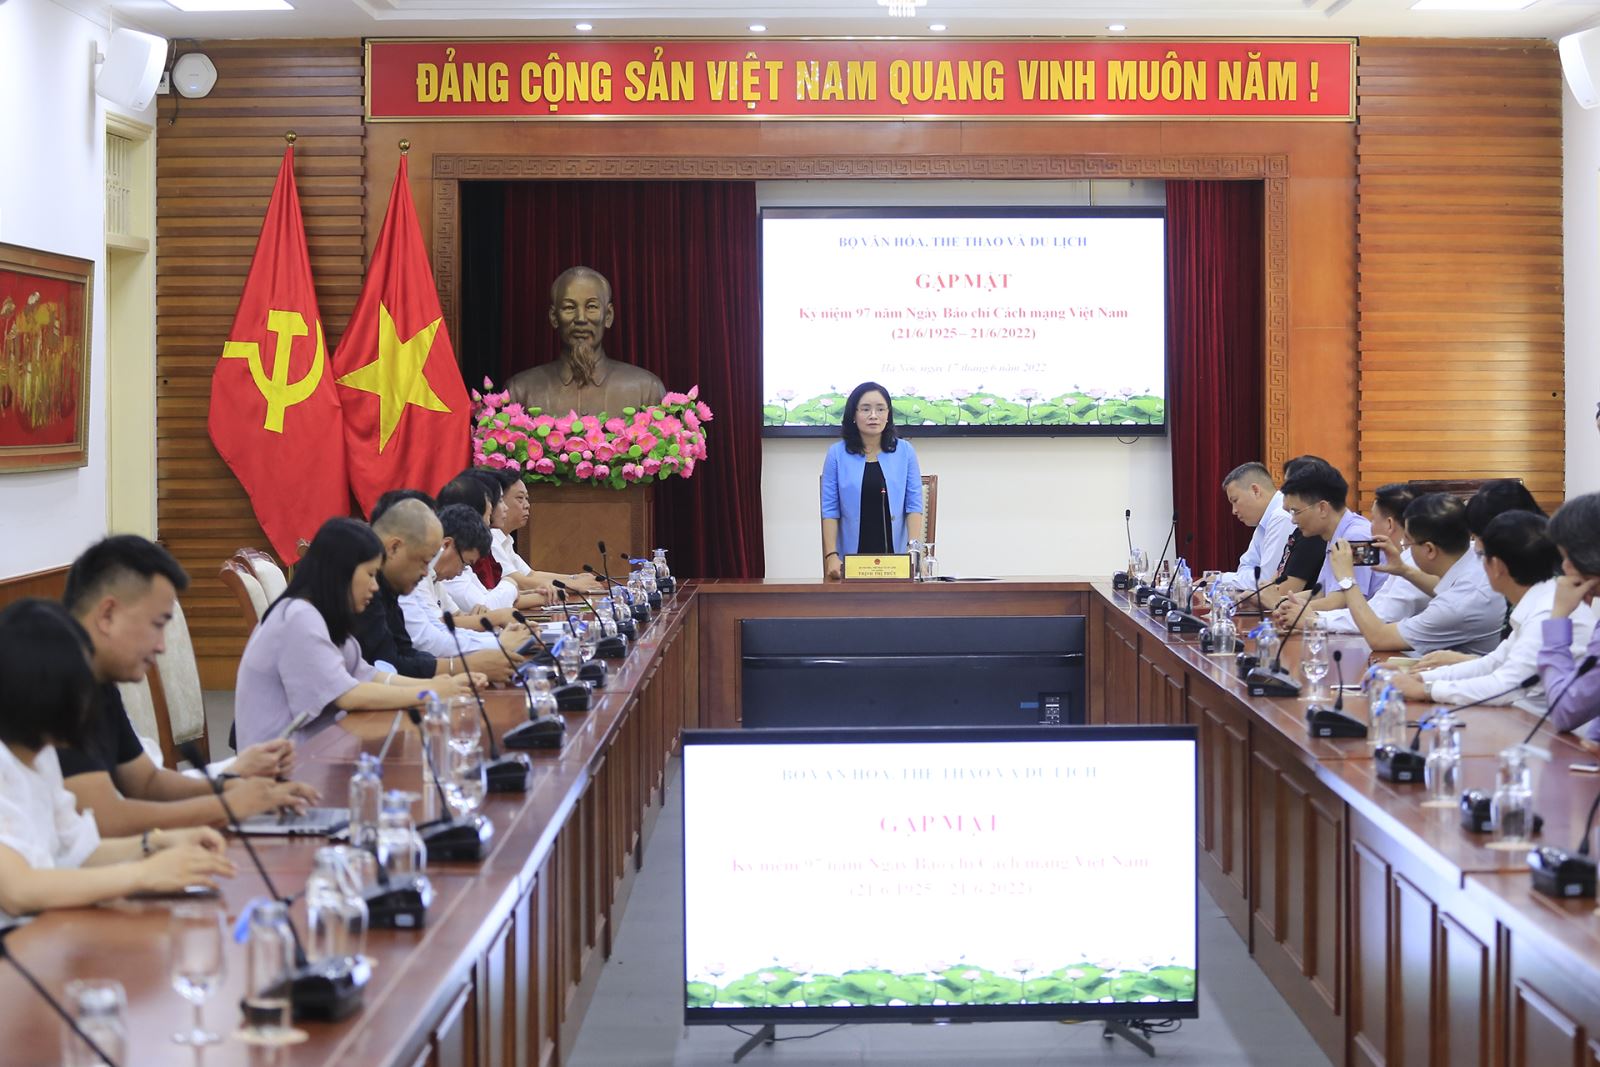 Bộ VHTTDL tổ chức Gặp mặt nhân dịp Kỷ niệm 97 năm Ngày Báo chí Cách mạng Việt Nam